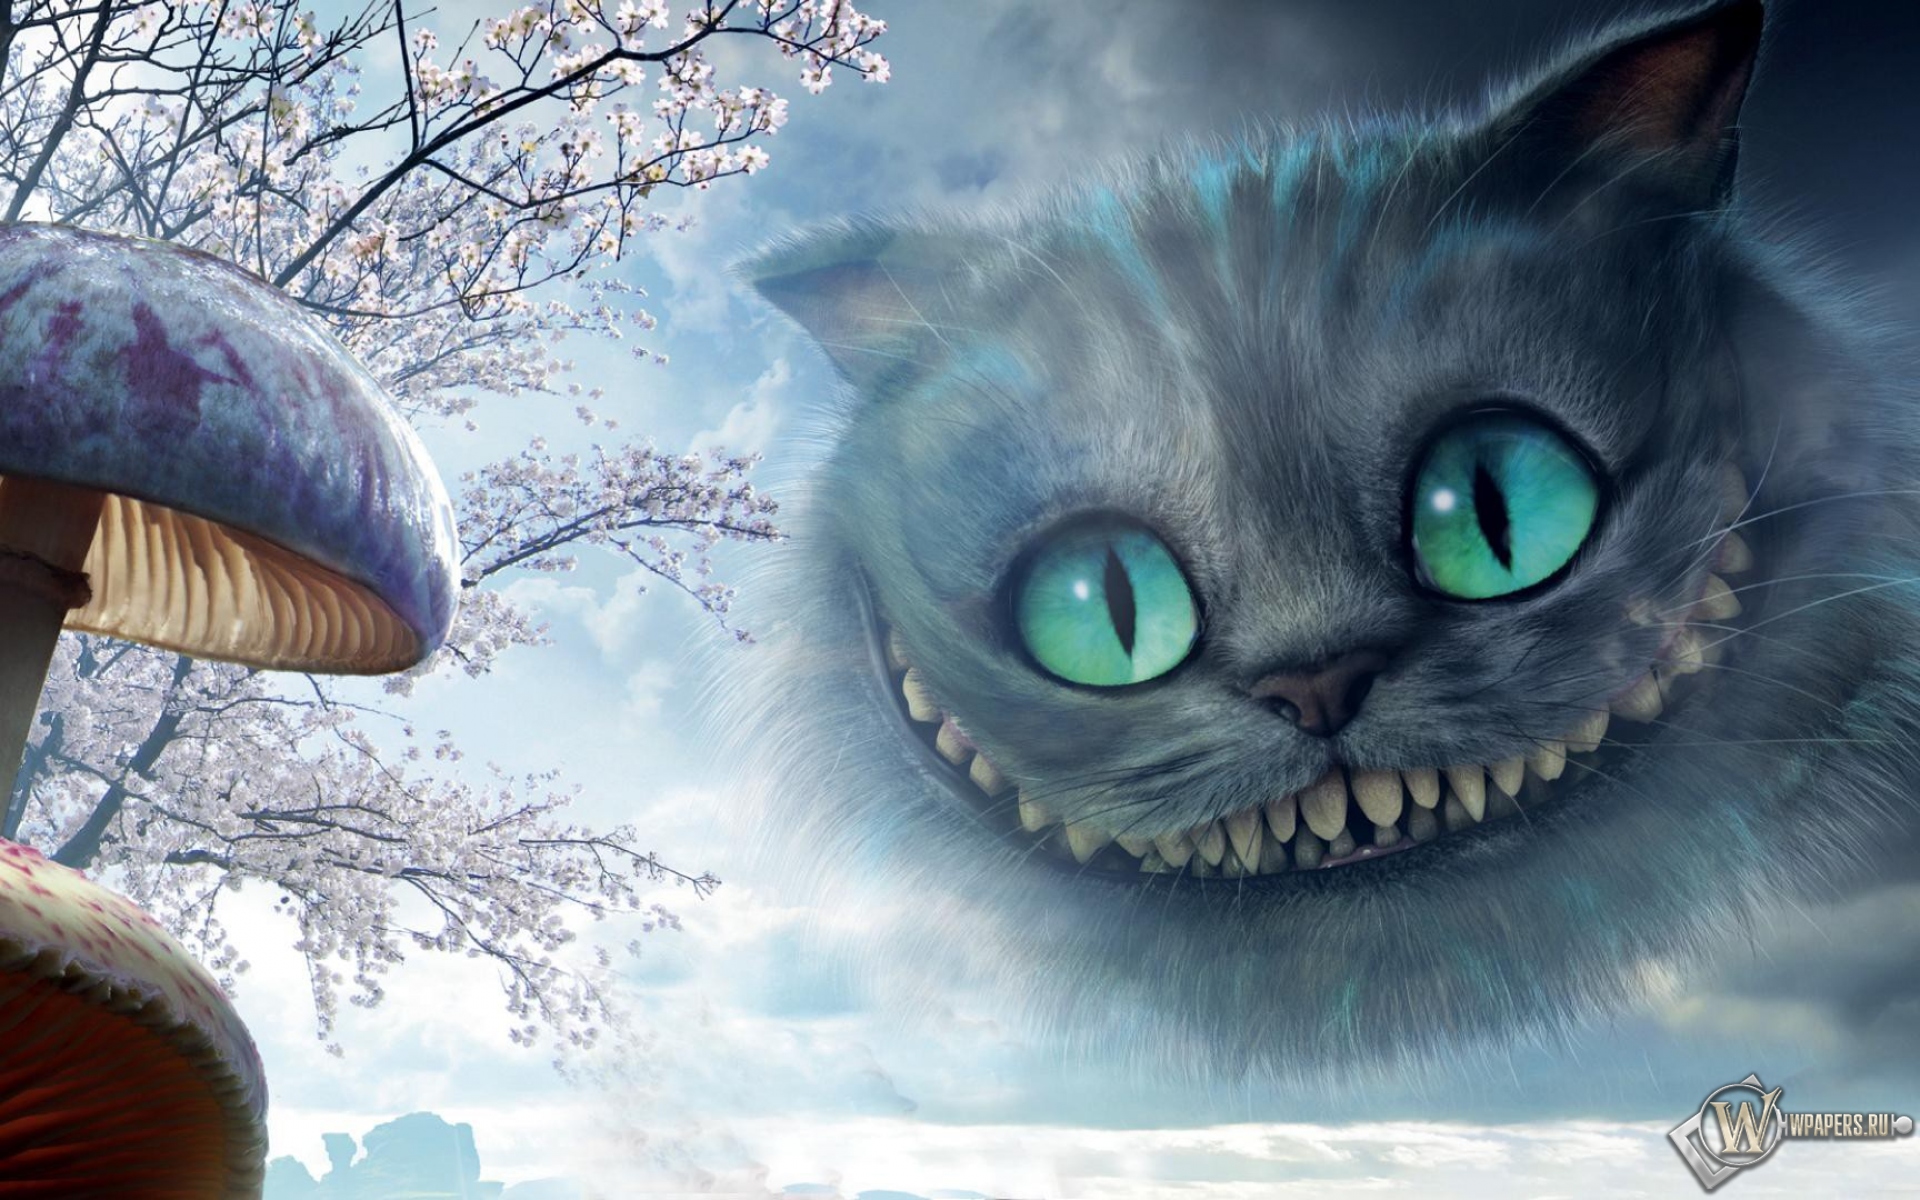 Улыбка Чеширского кота из фильма Алиса в стране чудес